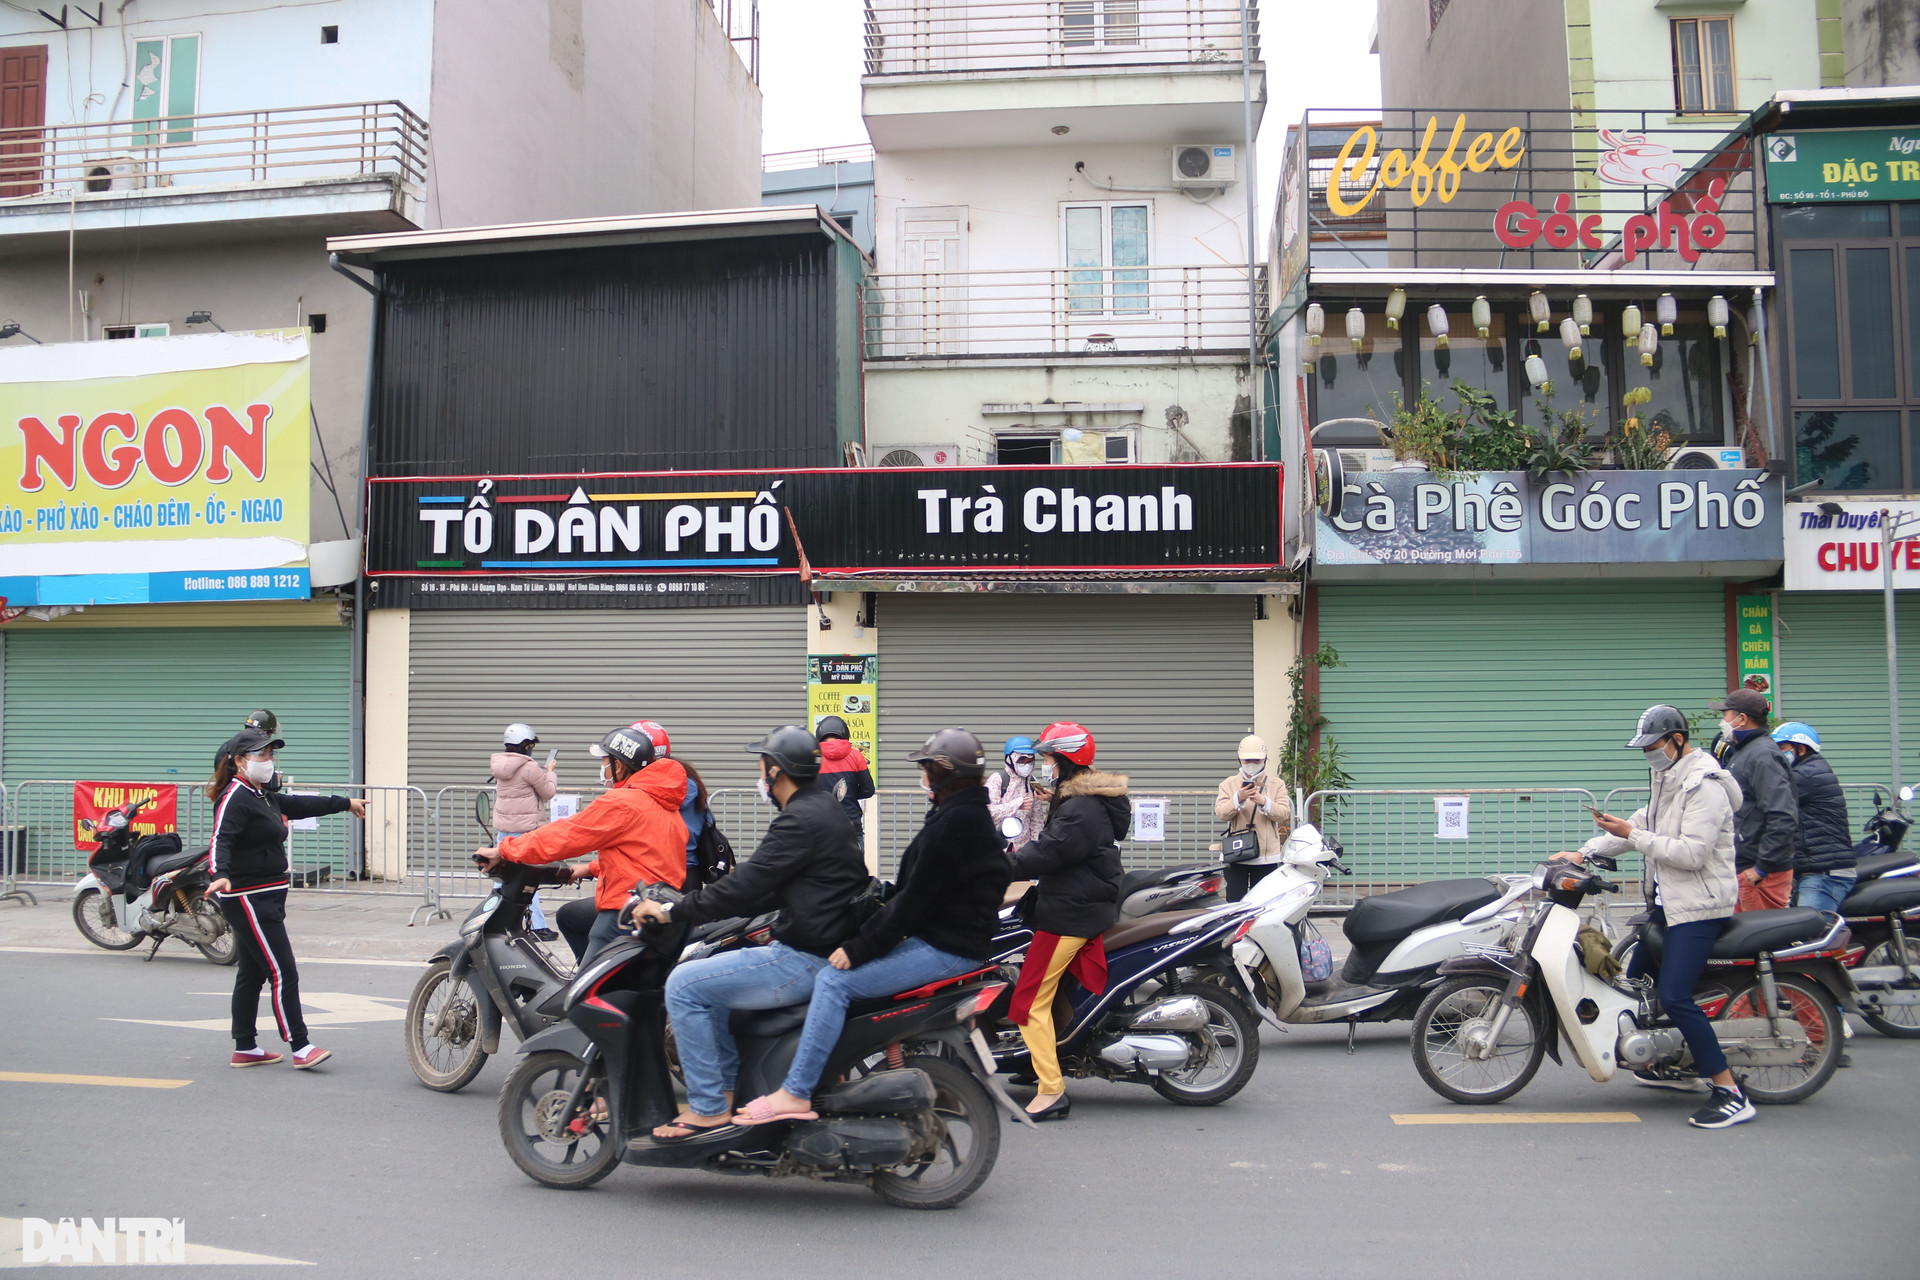 Hà Nội: Đông nghịt người quét QR Code tại ổ dịch Phú Đô - 9